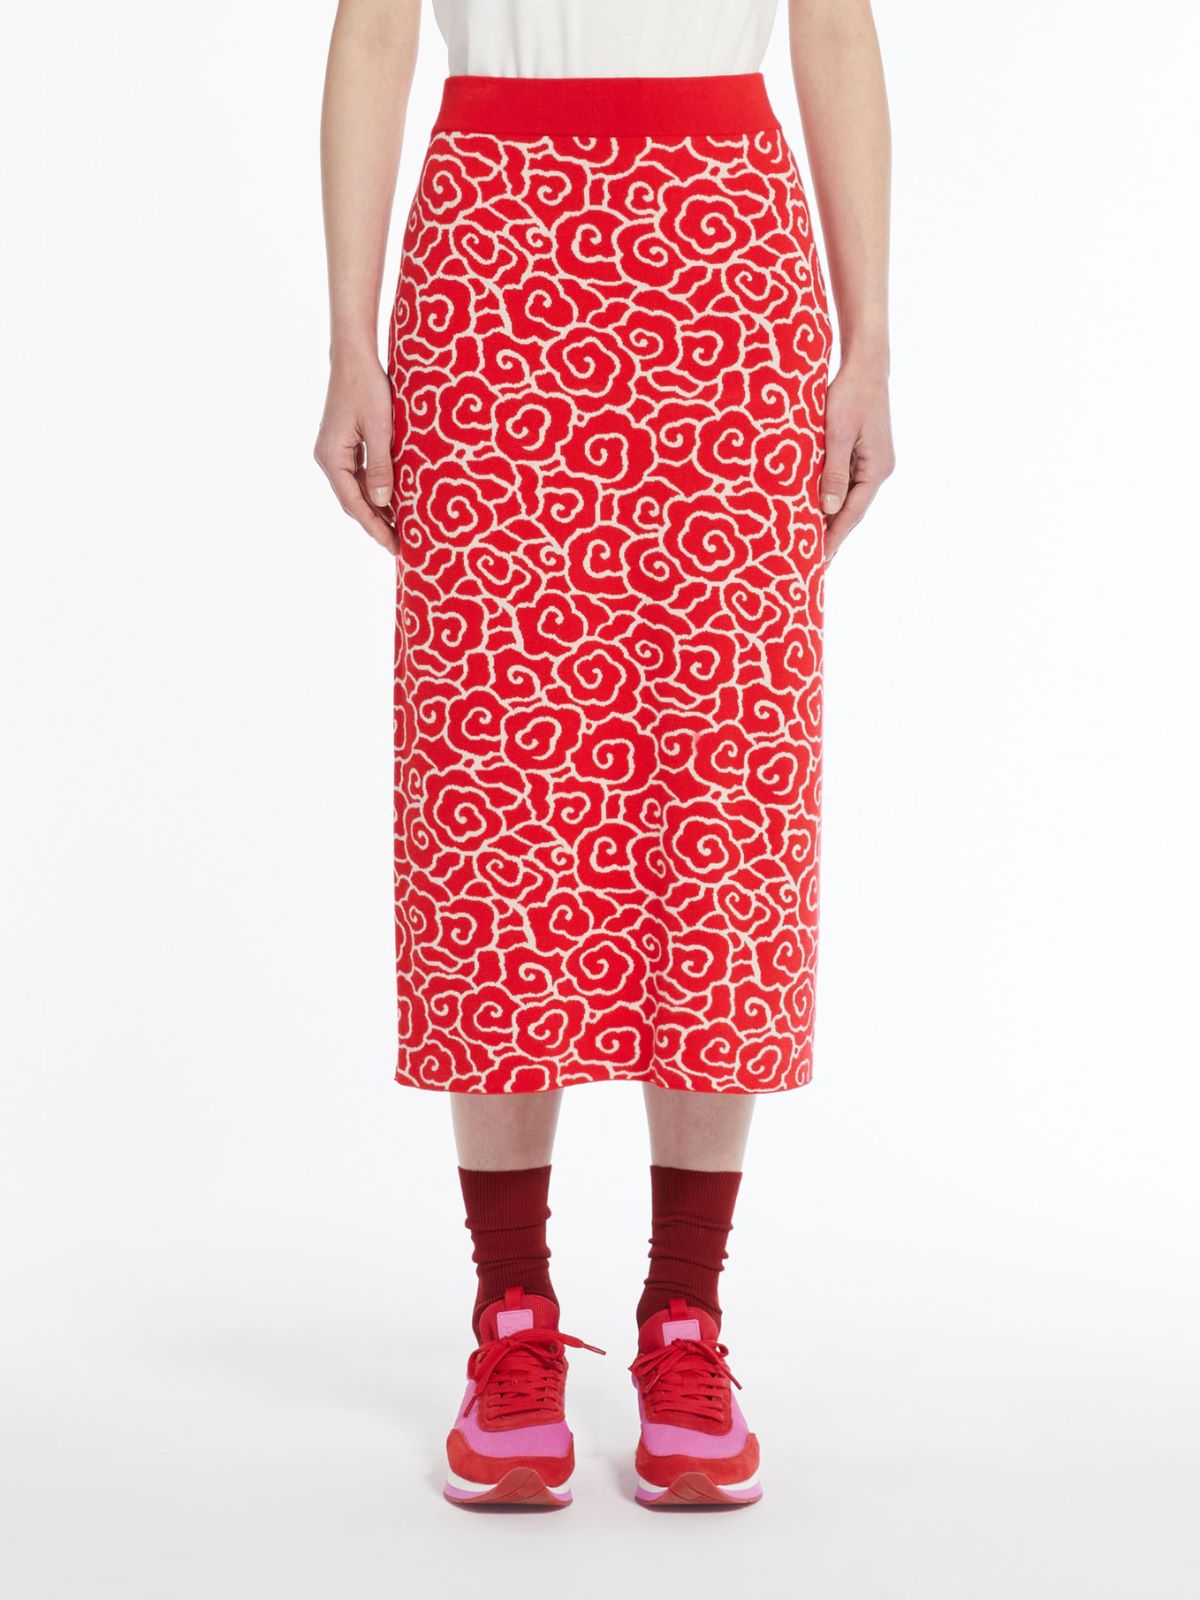 Jacquard viscose pencil skirt - RED - Weekend Max Mara - 2